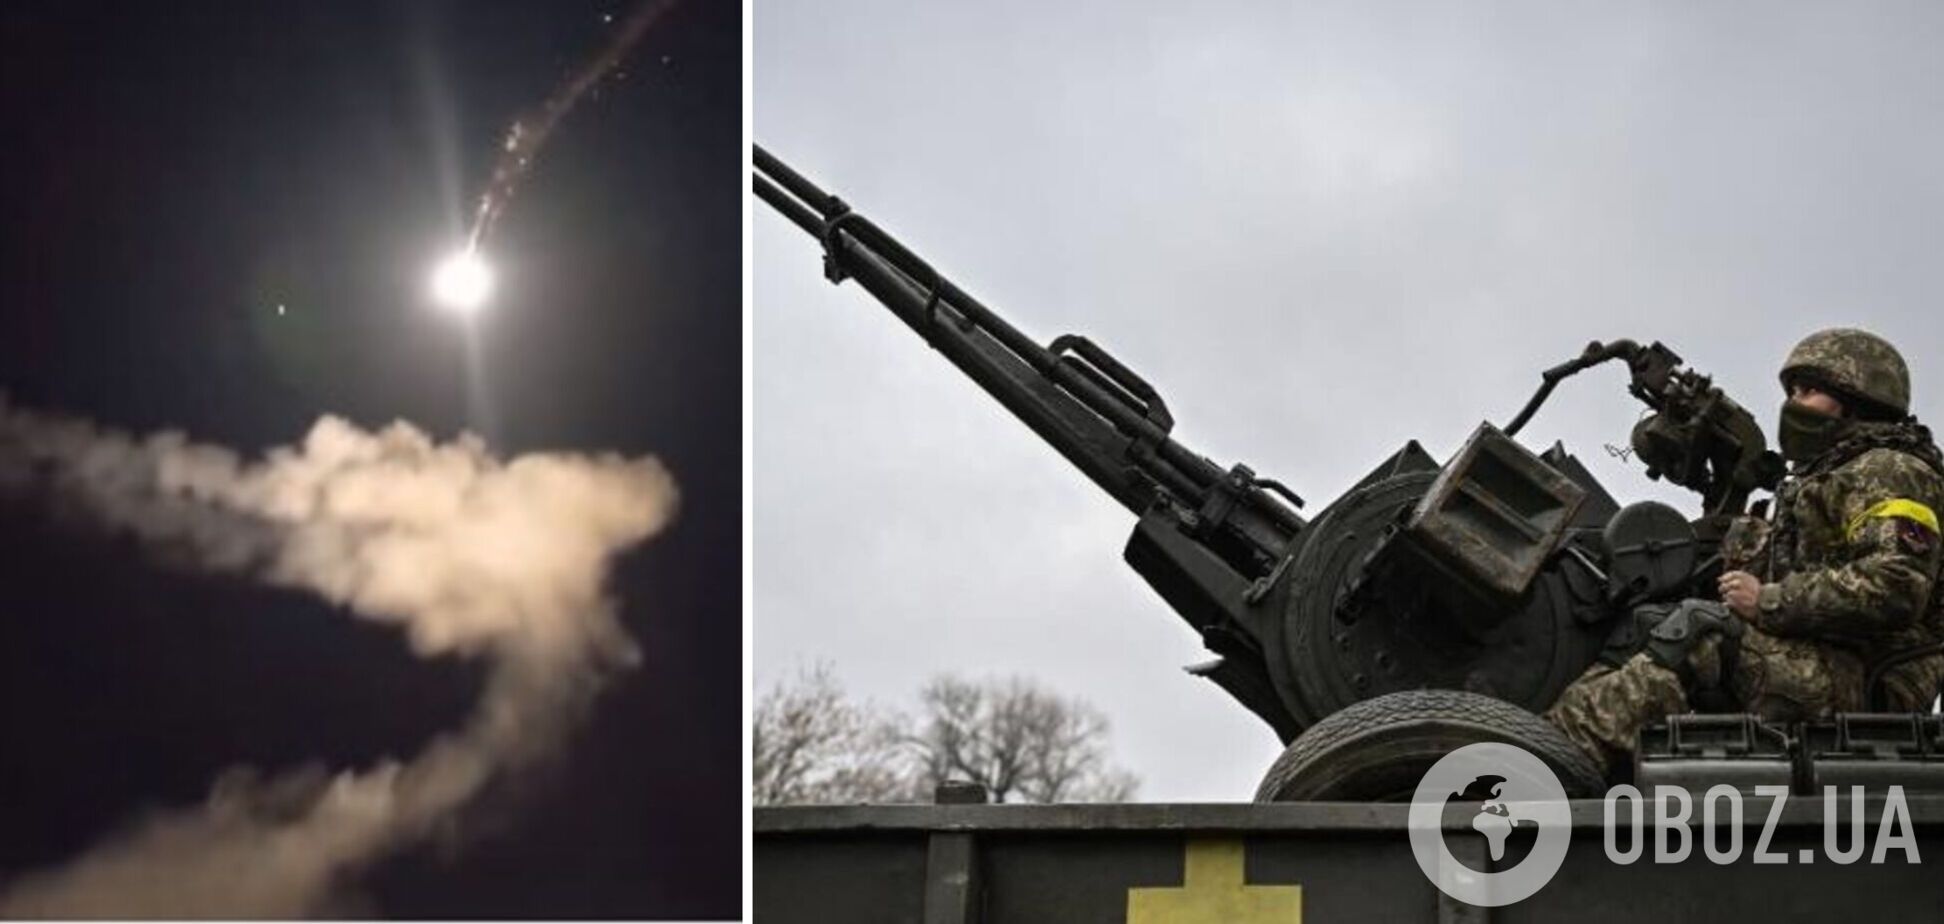 Украинские зенитчики показали, как сбили вражескую ракету в ночном небе: впечатляющее видео